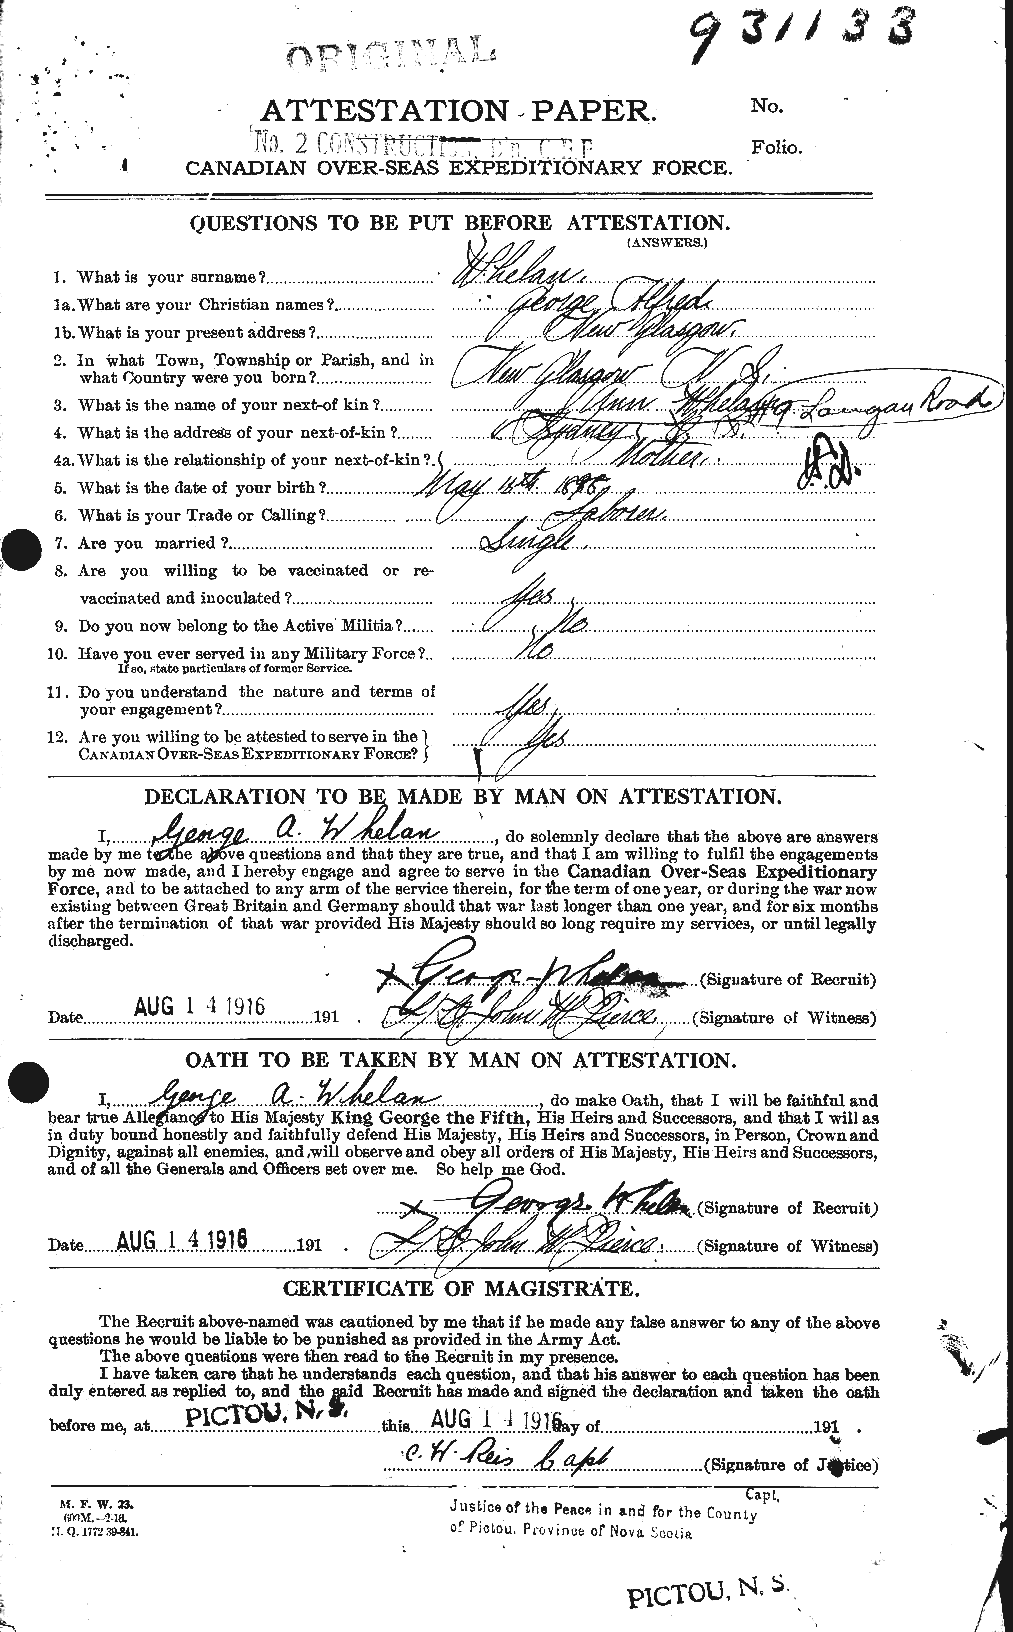 Dossiers du Personnel de la Première Guerre mondiale - CEC 667546a